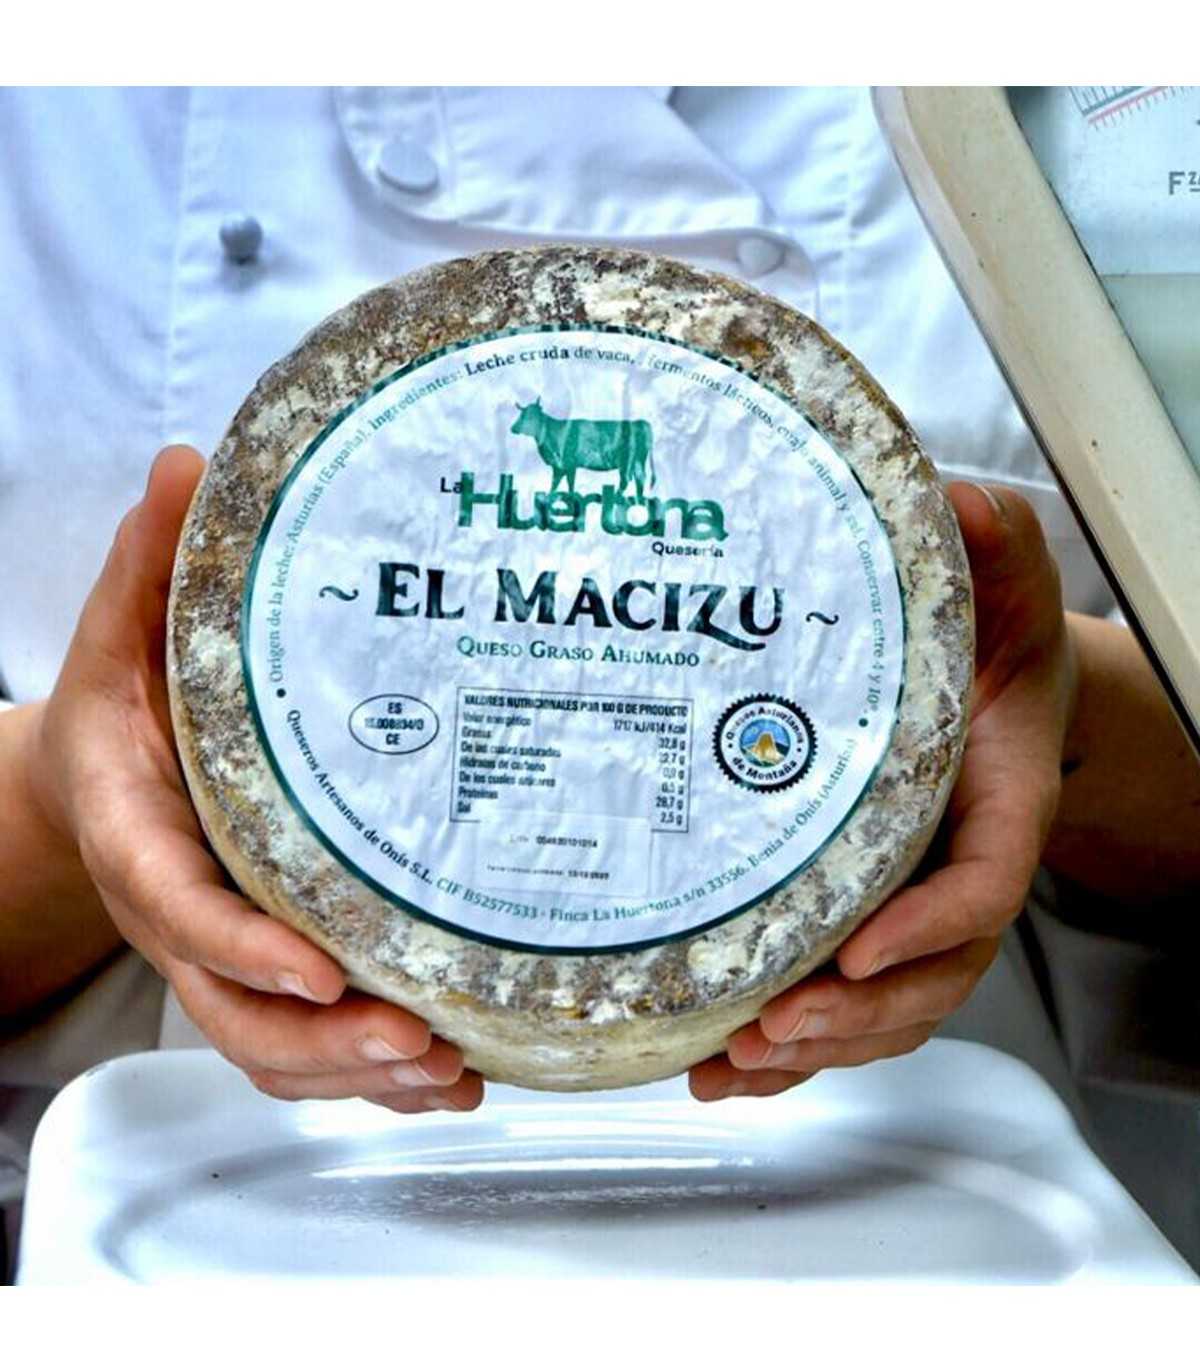 LA HUERTONA 320201 Cuña de queso Asturiano MACIZU - manos